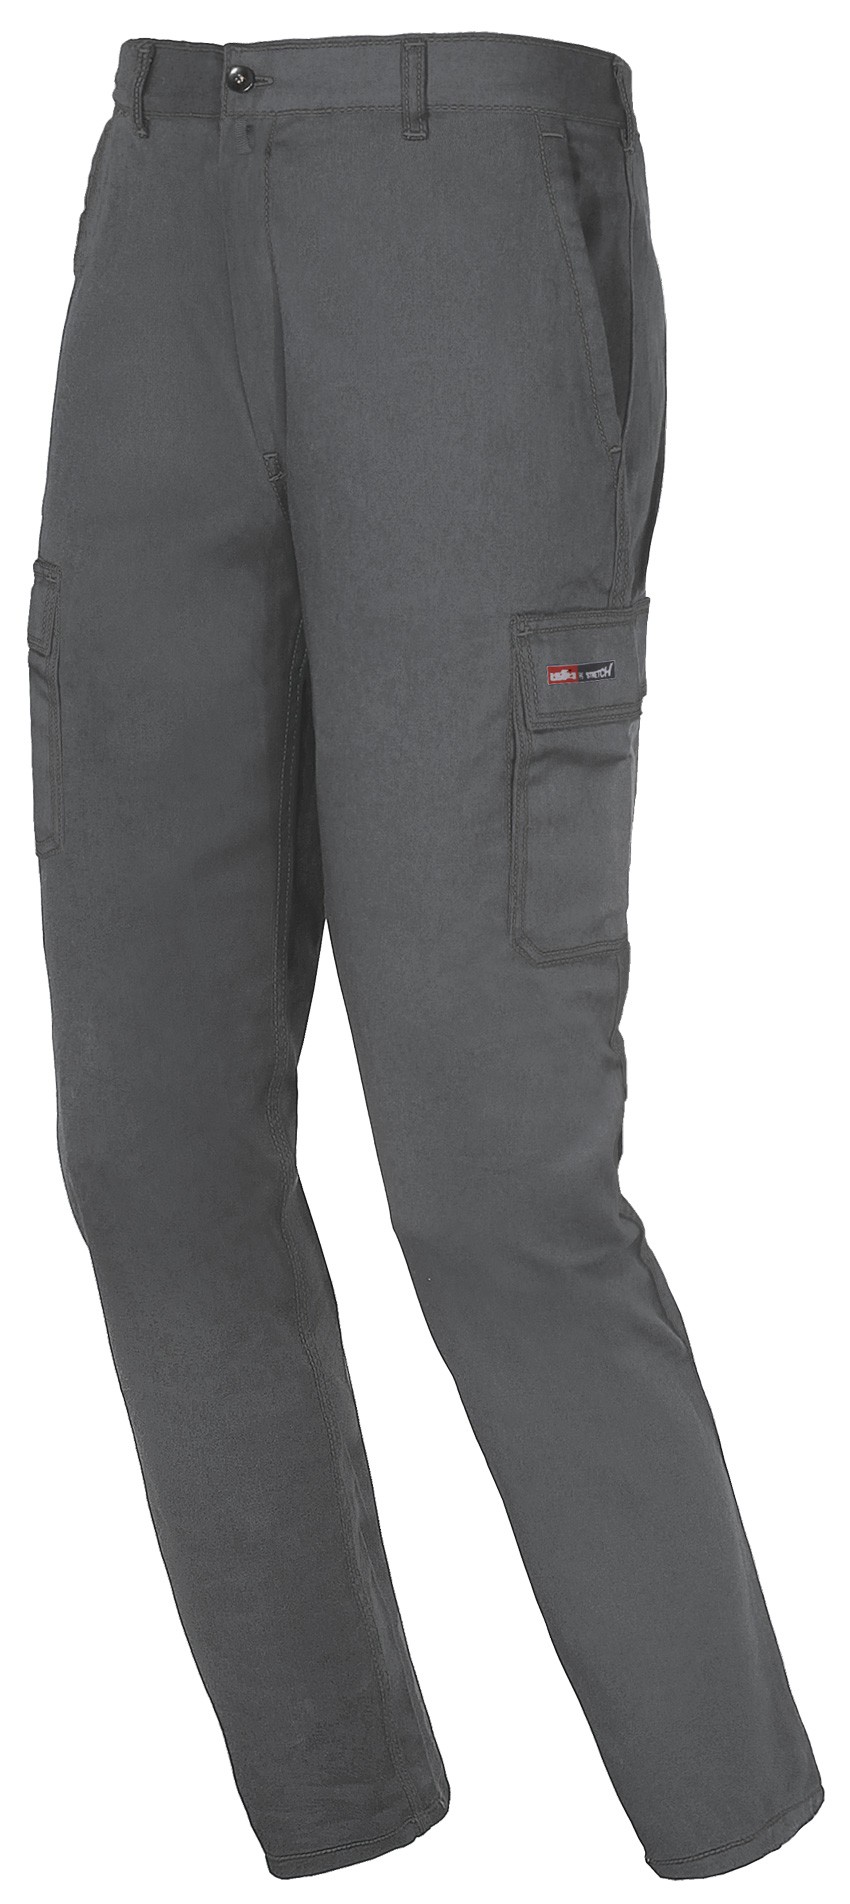 Pantalon de trabajo Easy Stretch 8038 gris